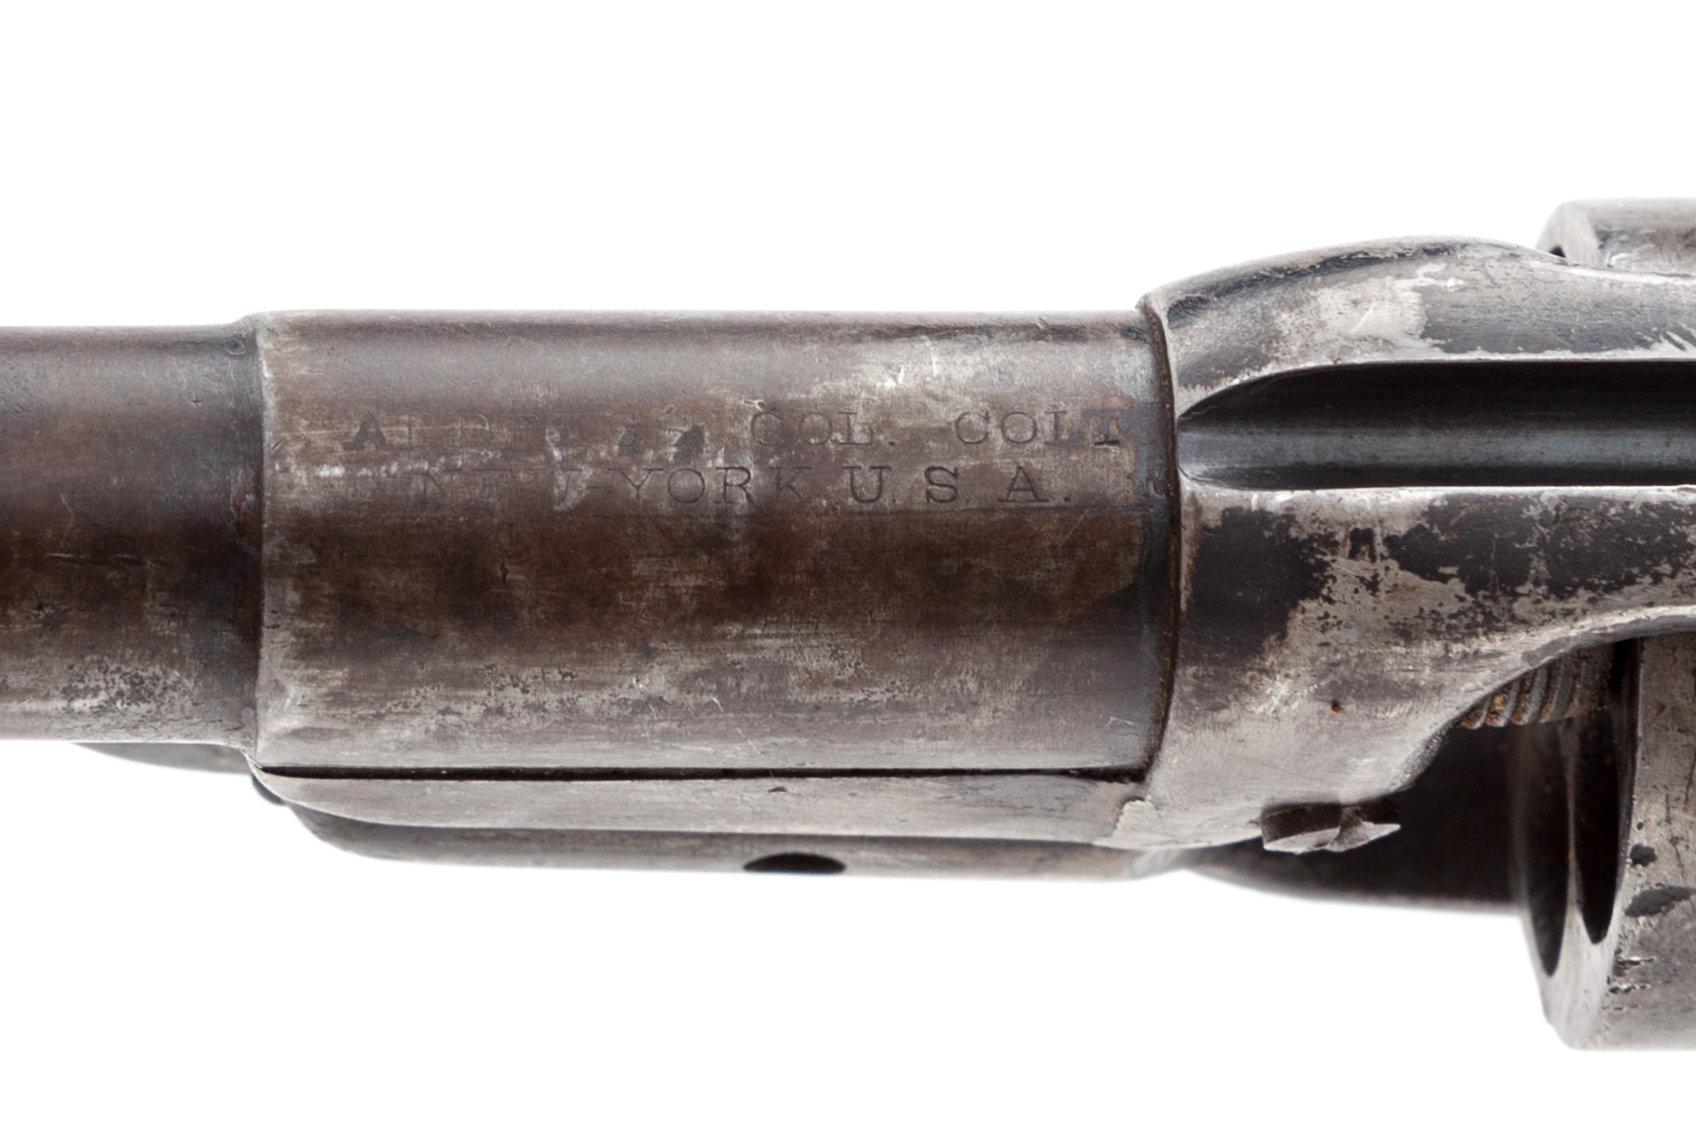 Colt 1855 Sidehammer Root Revolver